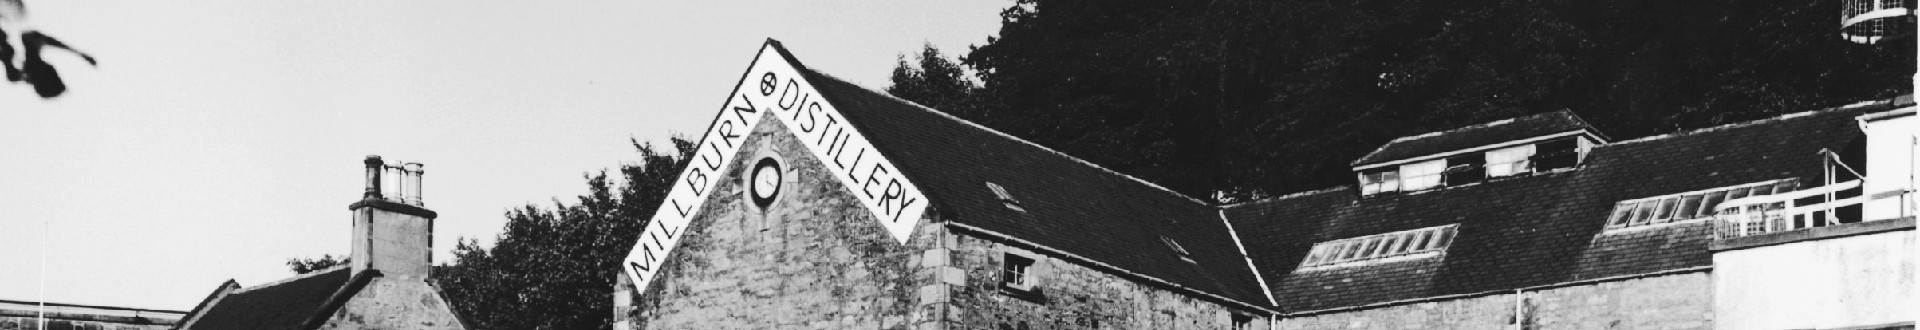 Millburn Distillery